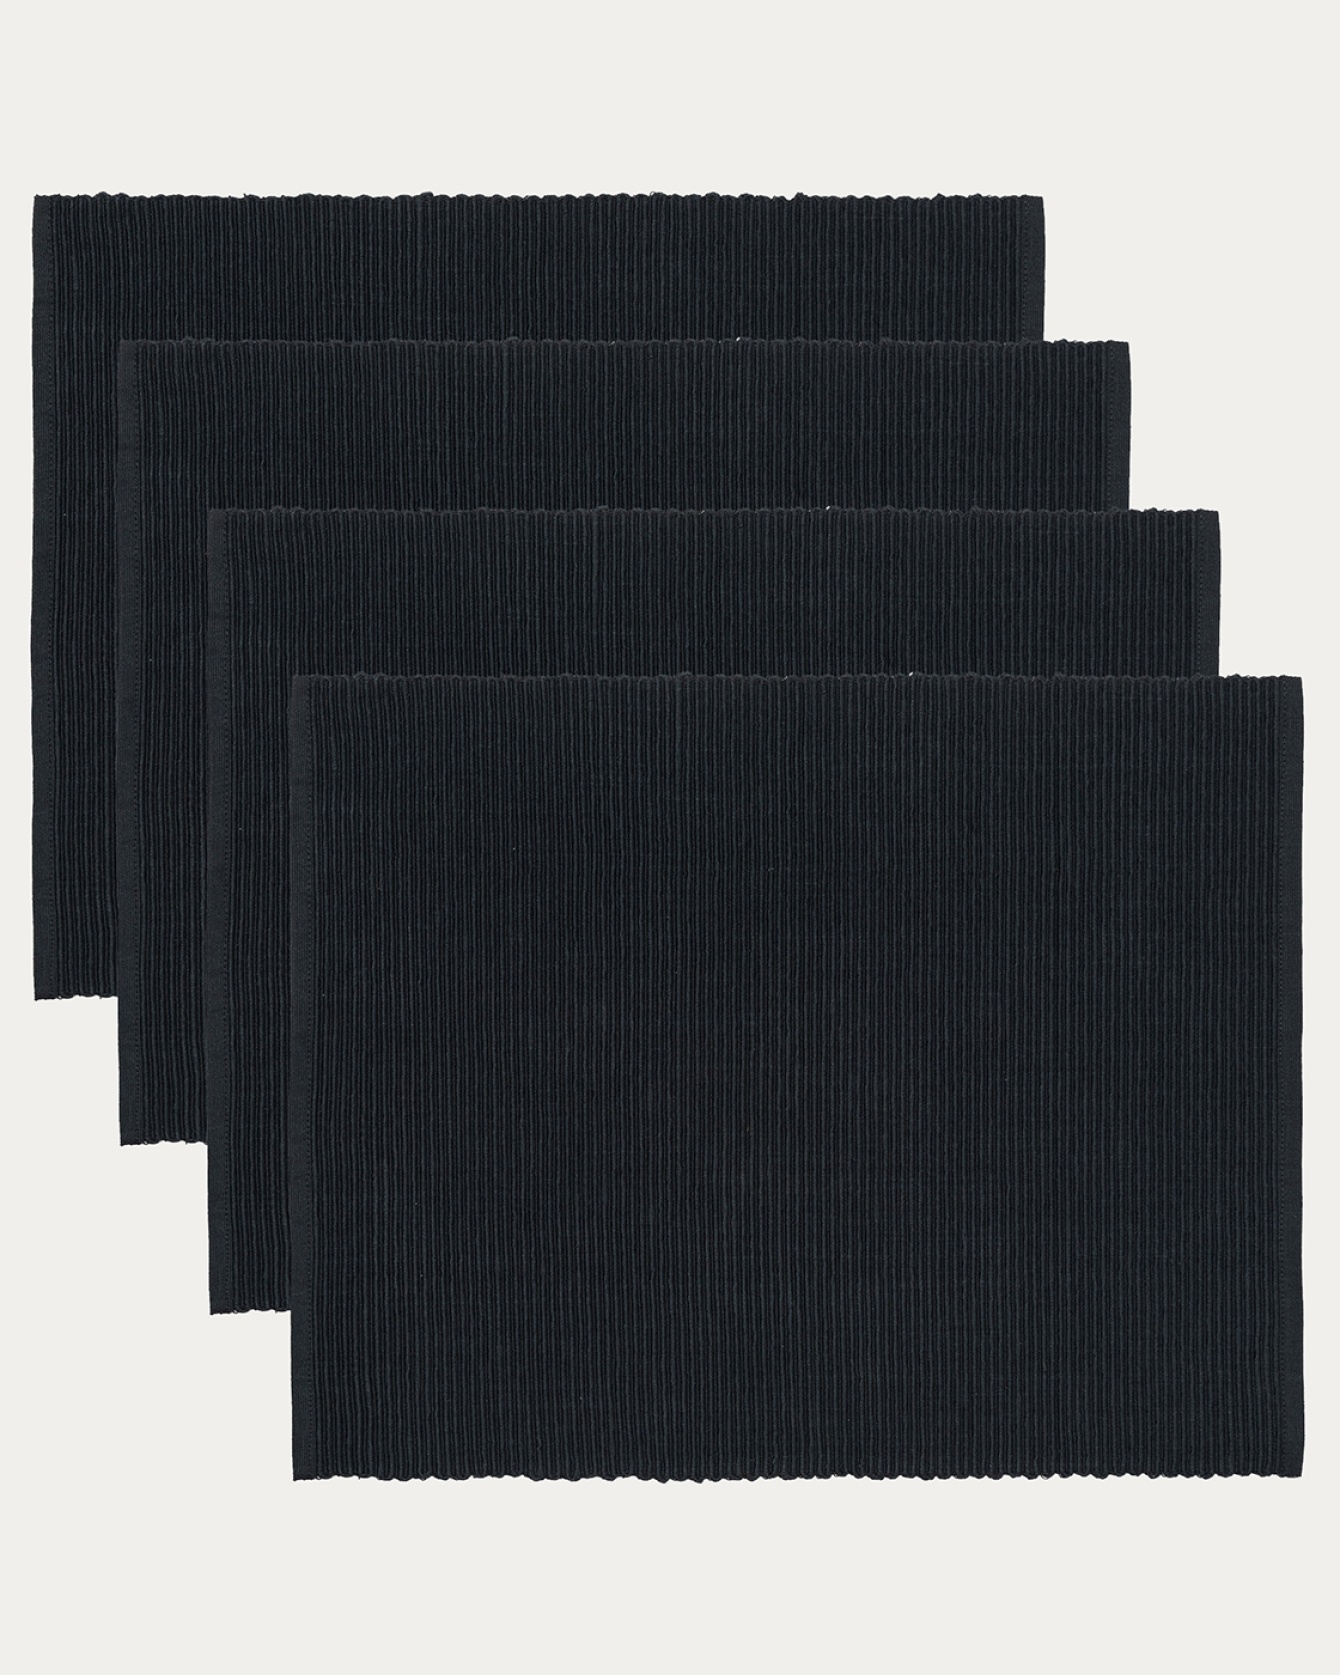 Produktbild svart UNI bordstablett av mjuk bomull i ribbad kvalité från LINUM DESIGN. Storlek 35x46 cm och säljs i 4-pack.